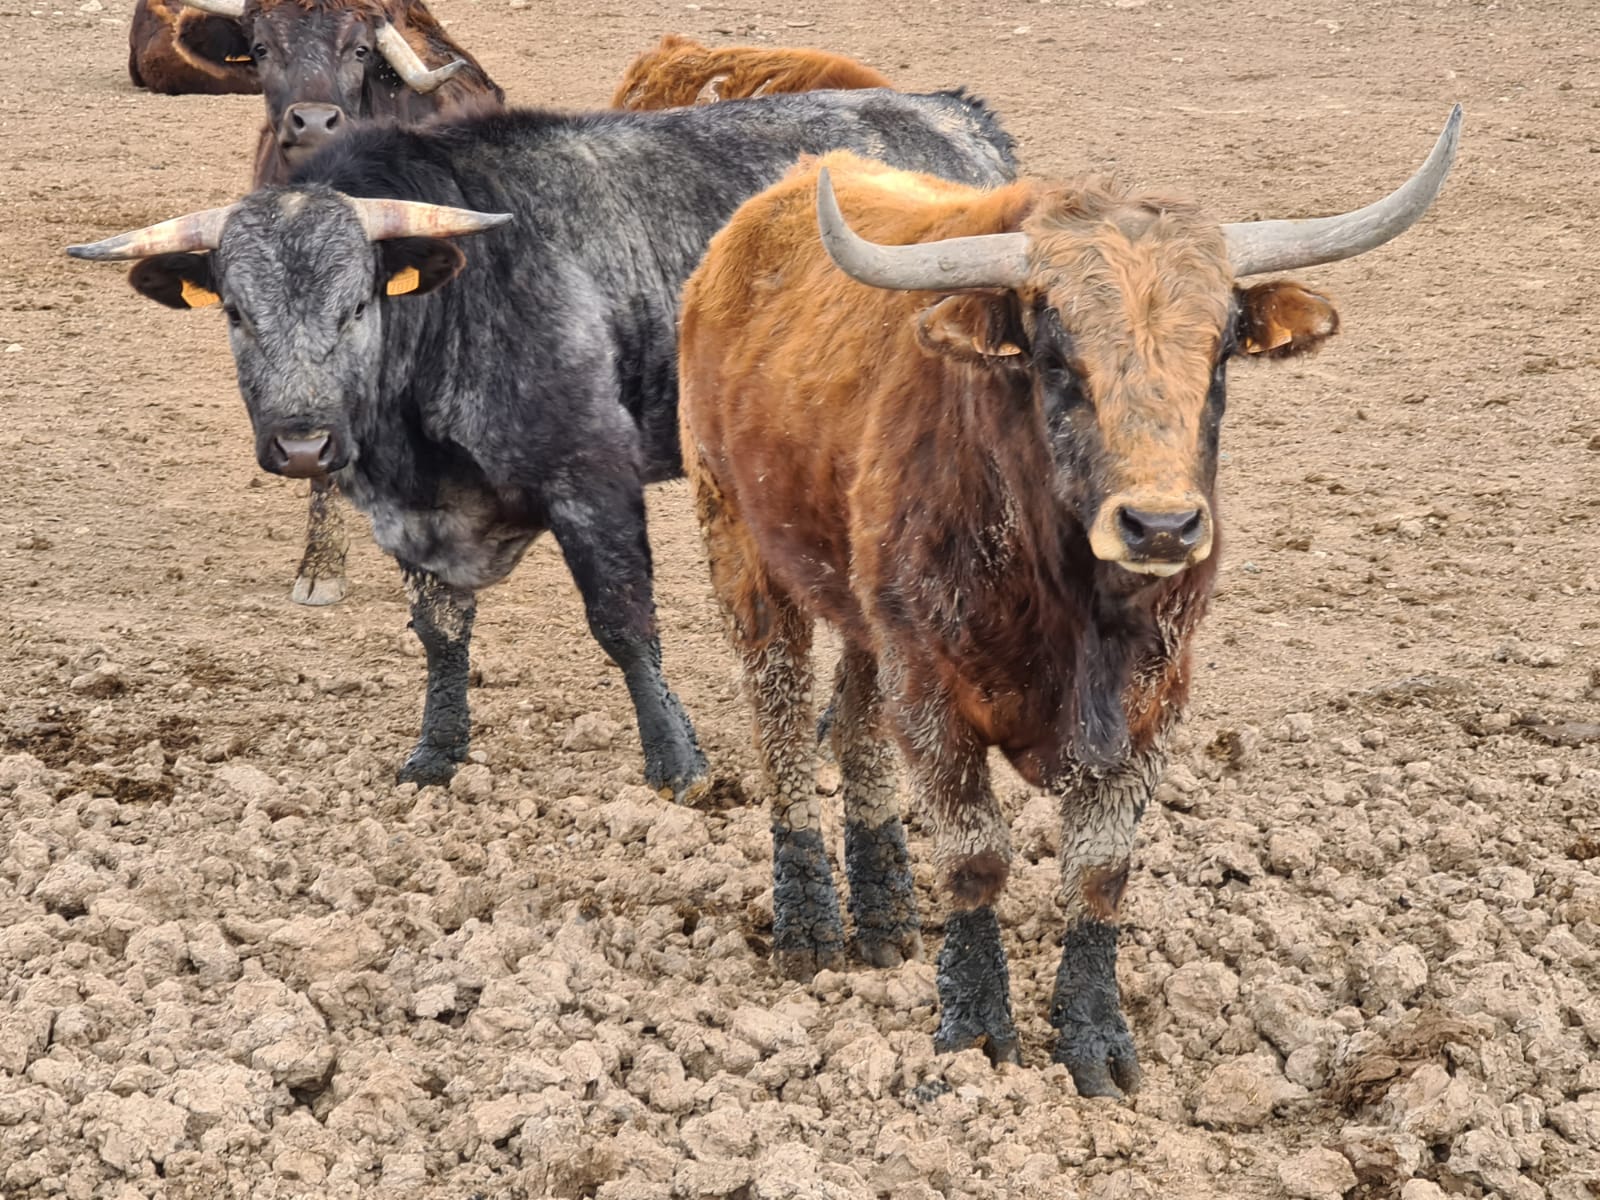 Cattle in a field in Spain